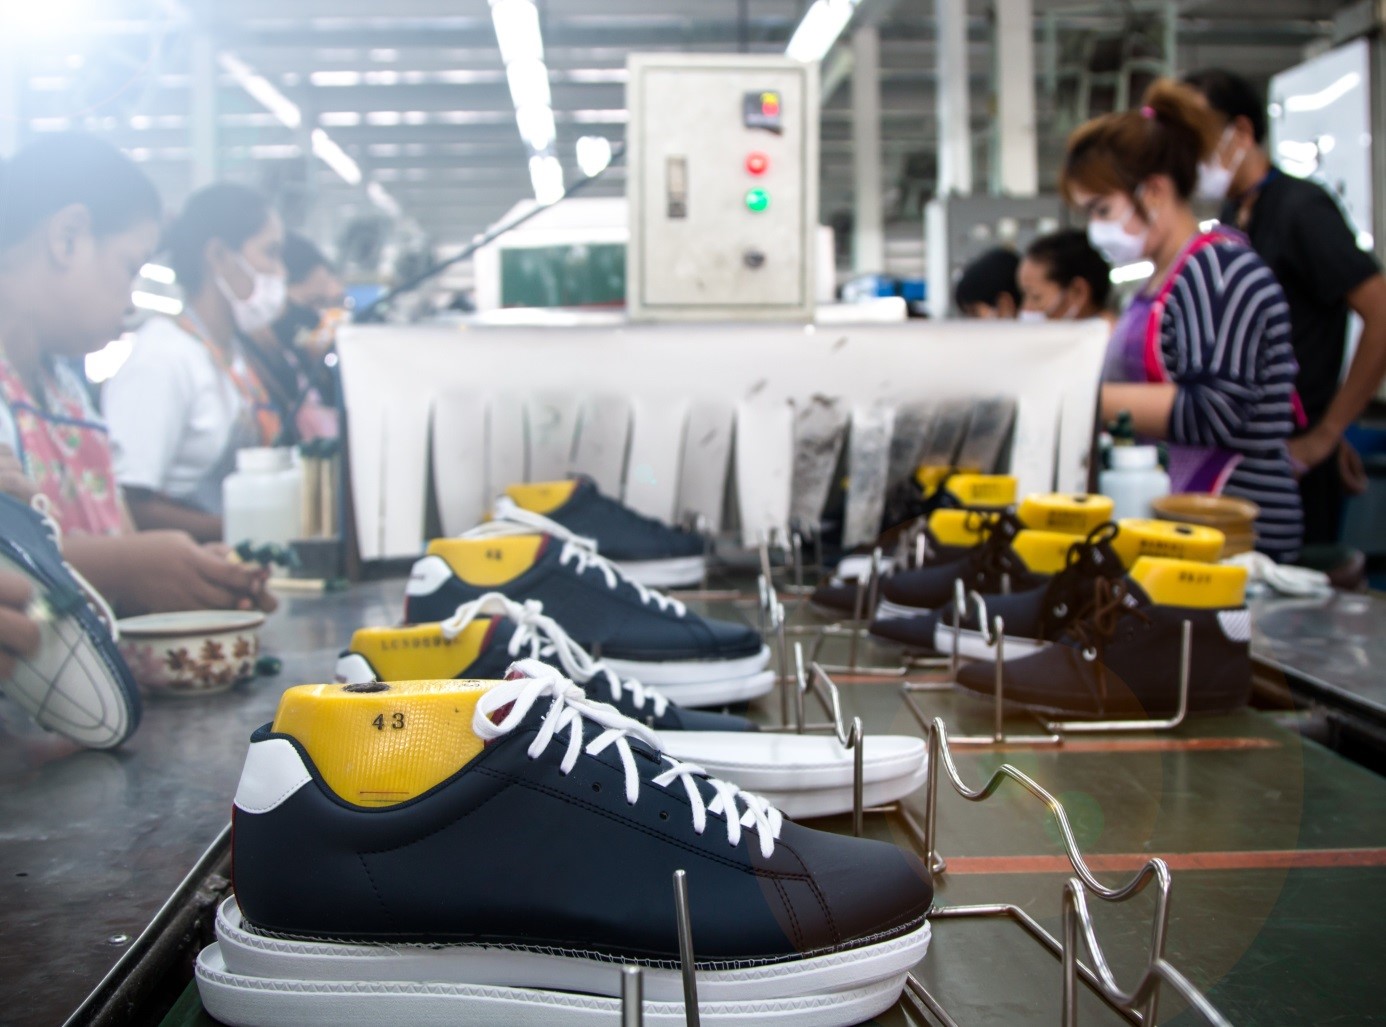 Doanh thu từ xuất khẩu giày dép, túi xách năm 2022 đạt 28 tỷ USD, tăng hơn 6 tỷ USD so với năm ngoái.